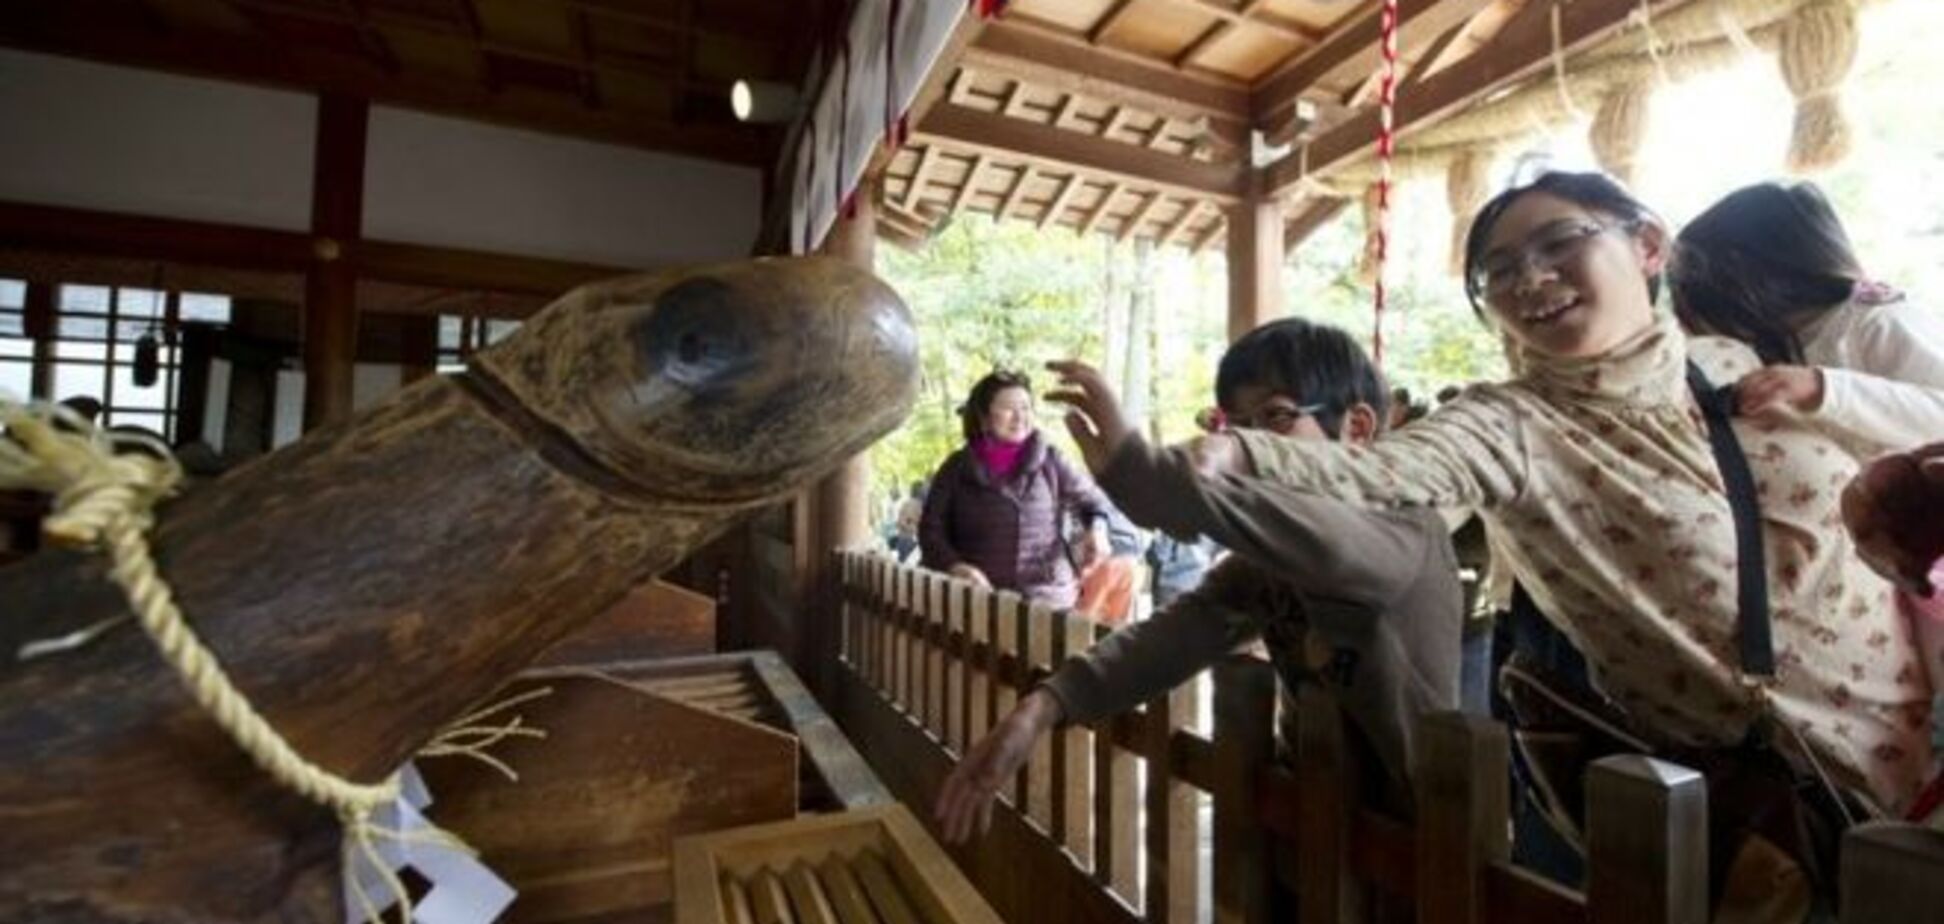 Хонэн-мацури или фестиваль пениса в Японии